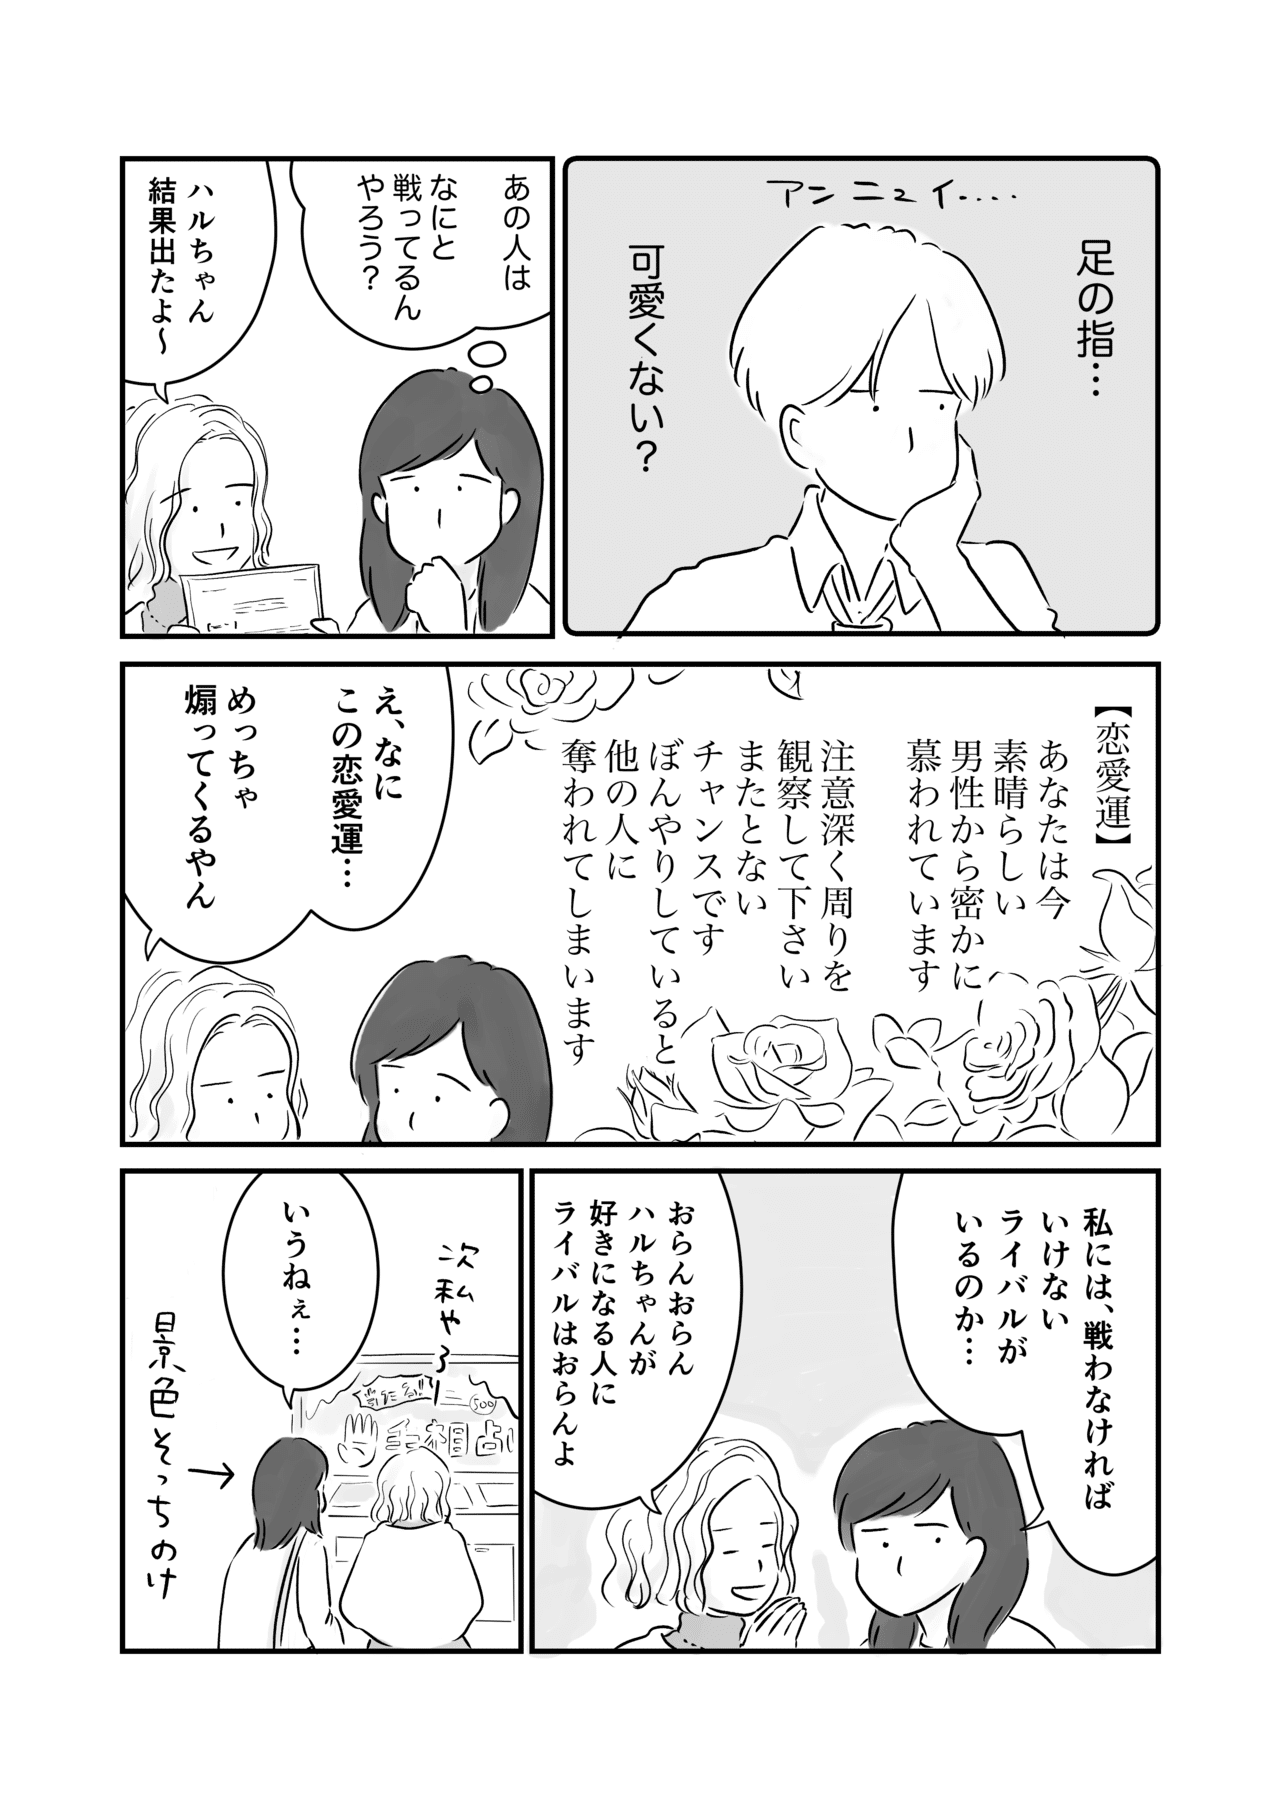 コミック5_出力_006